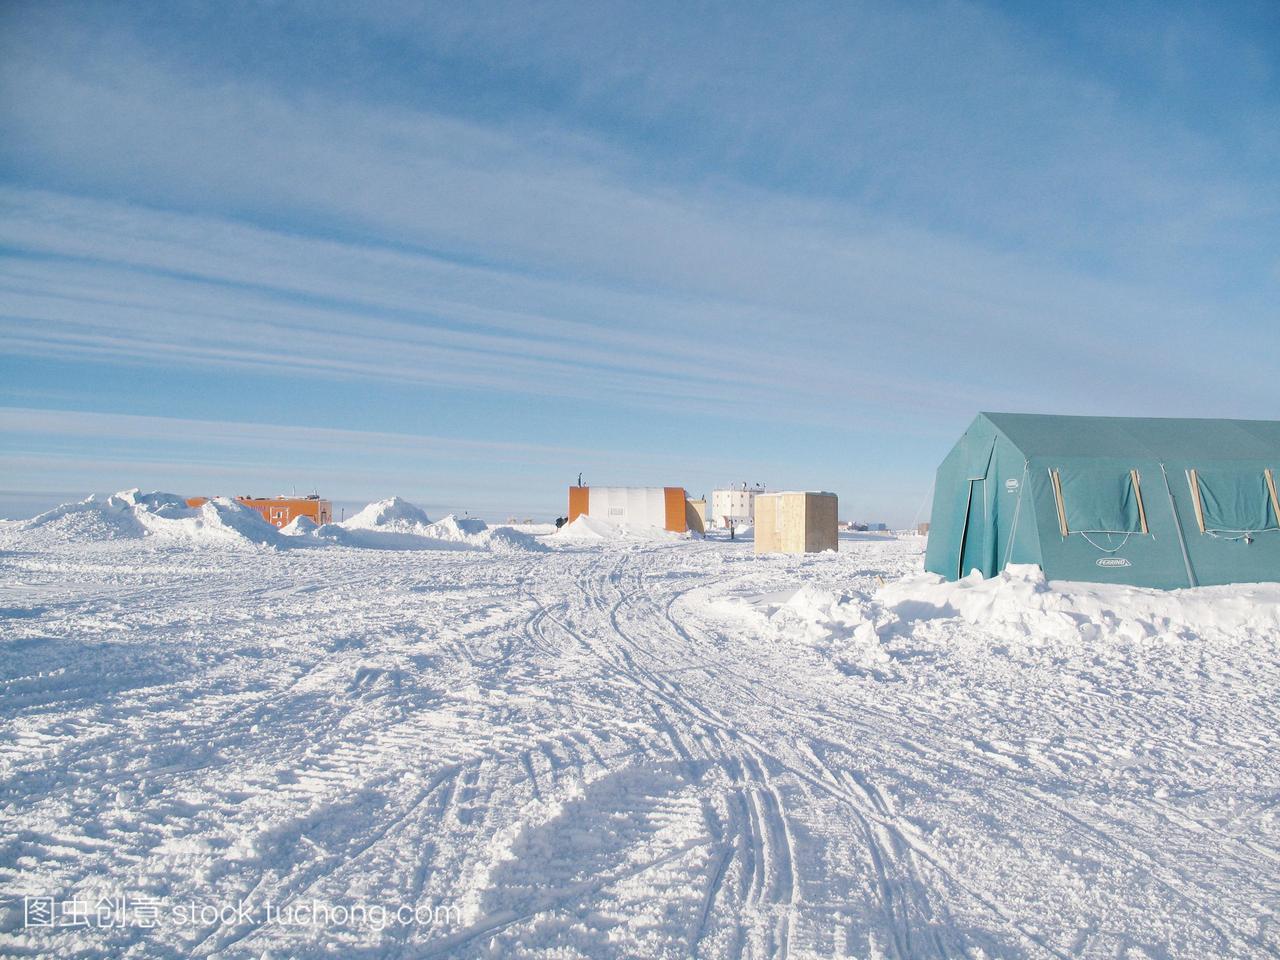 肯考迪娅研究基地南极洲。基本完成于2005年